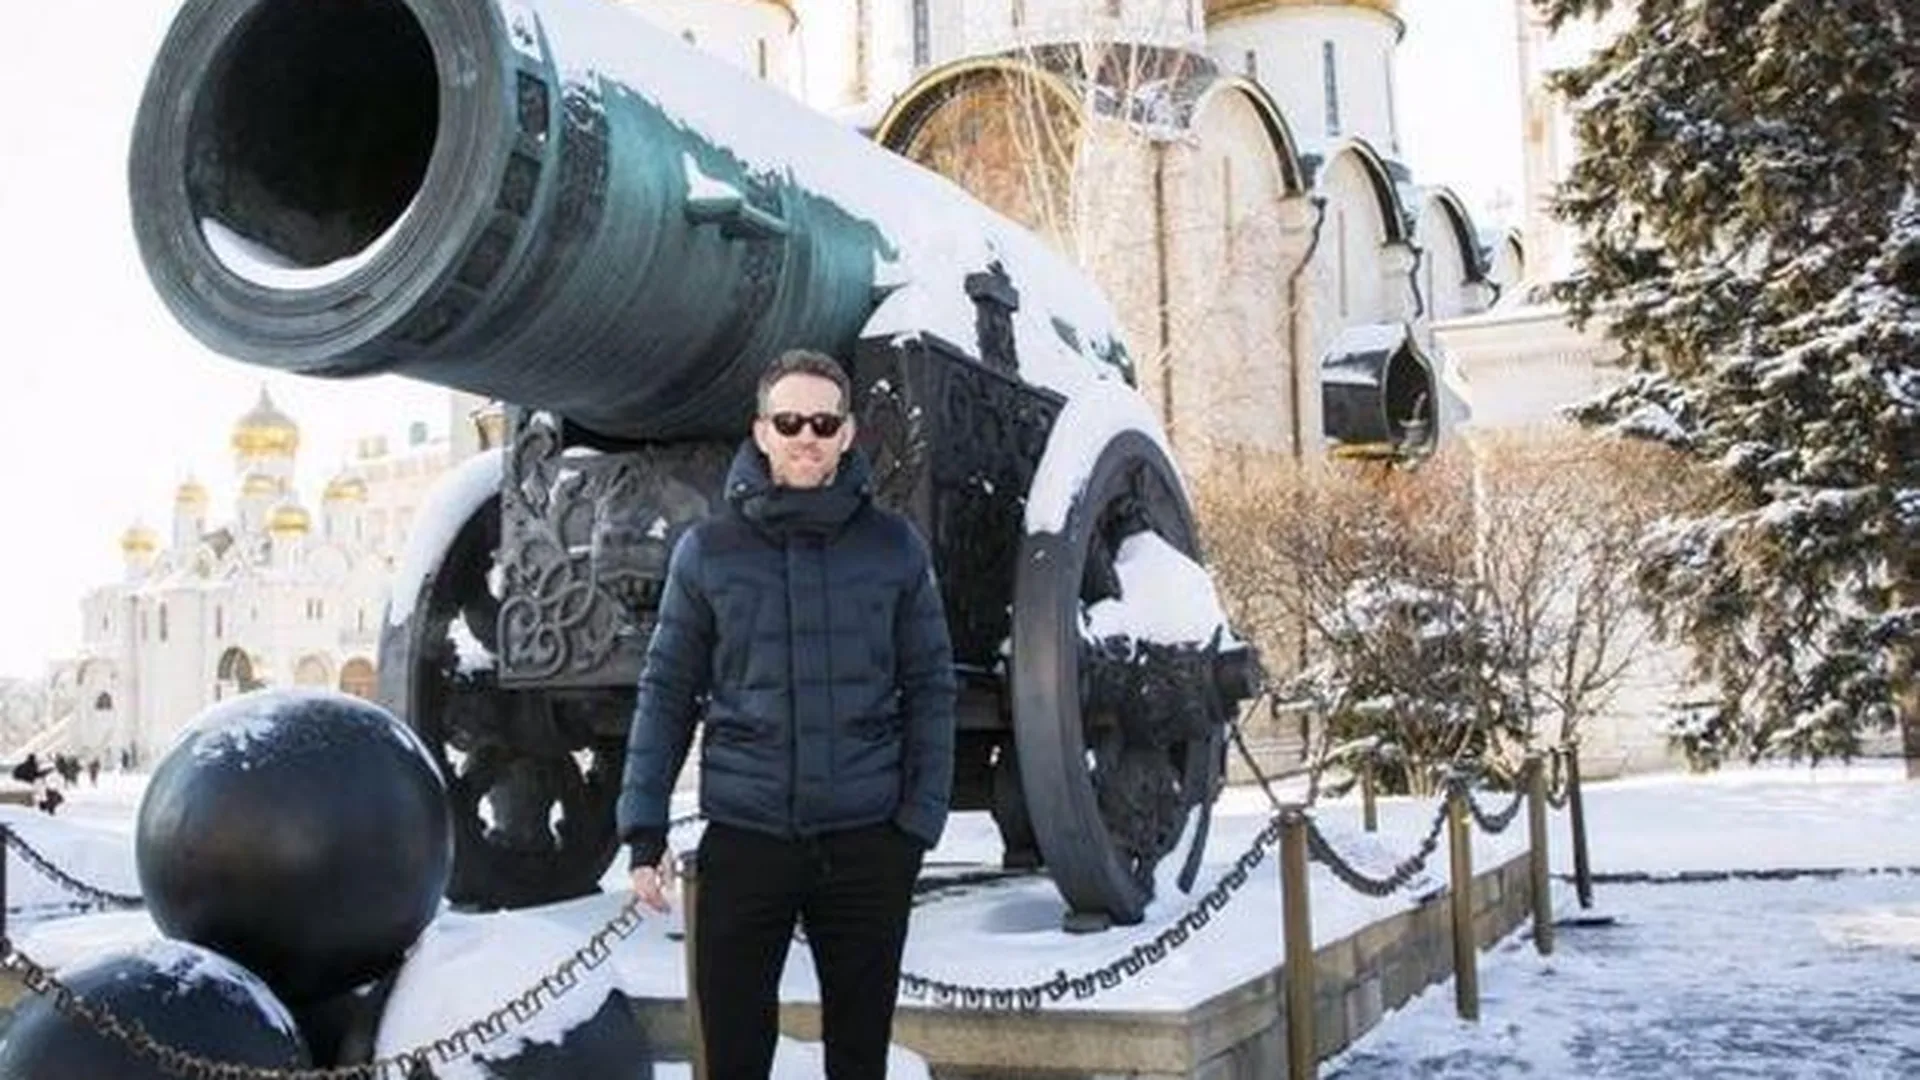 Актер Райан Рейнольдс пошутил о размере московской Царь-пушки